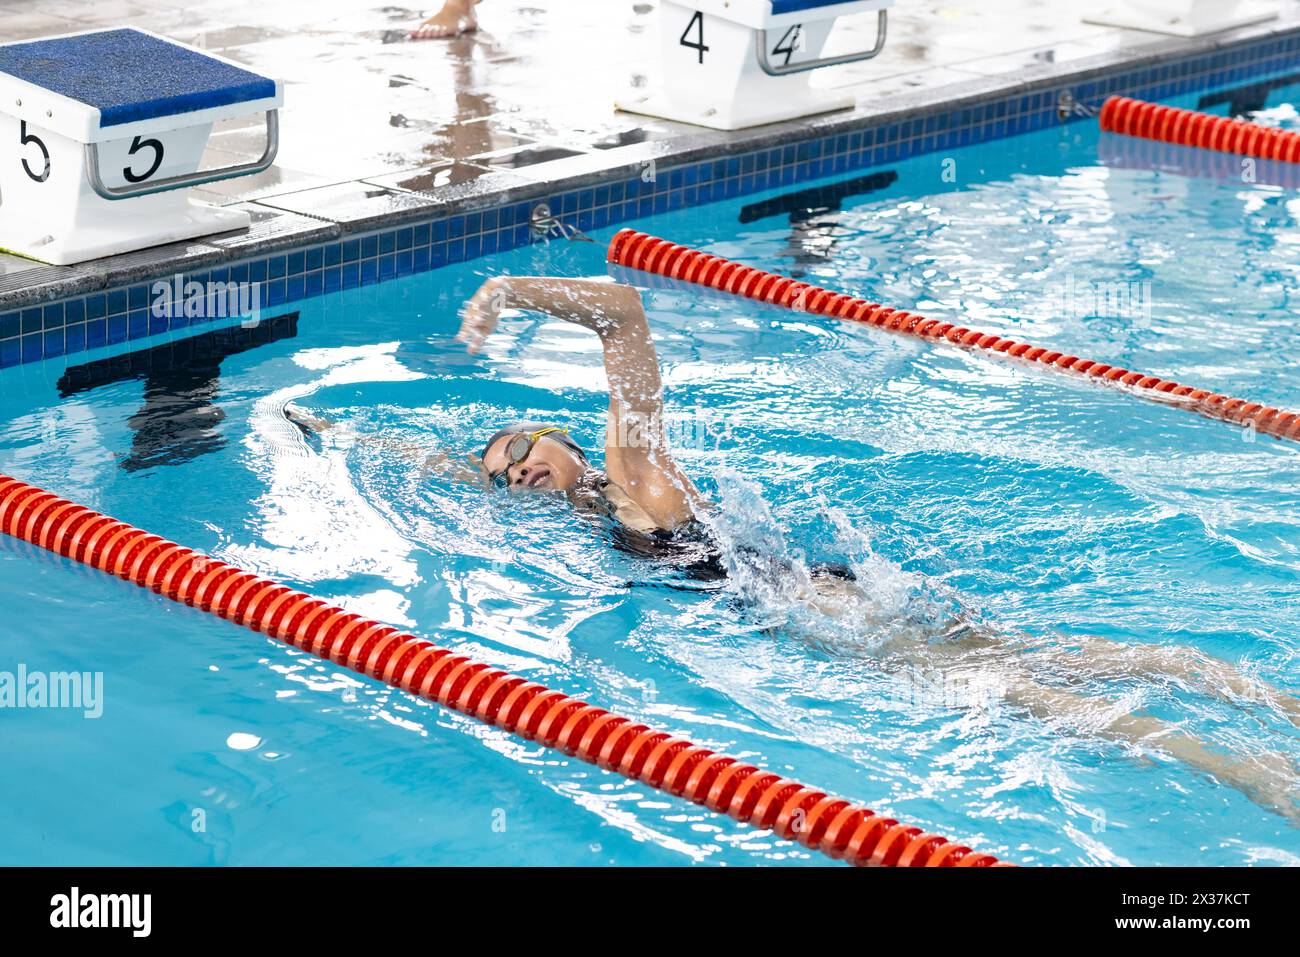 Une jeune nageuse biraciale portant des lunettes, s'entraînant dans une piscine intérieure Banque D'Images